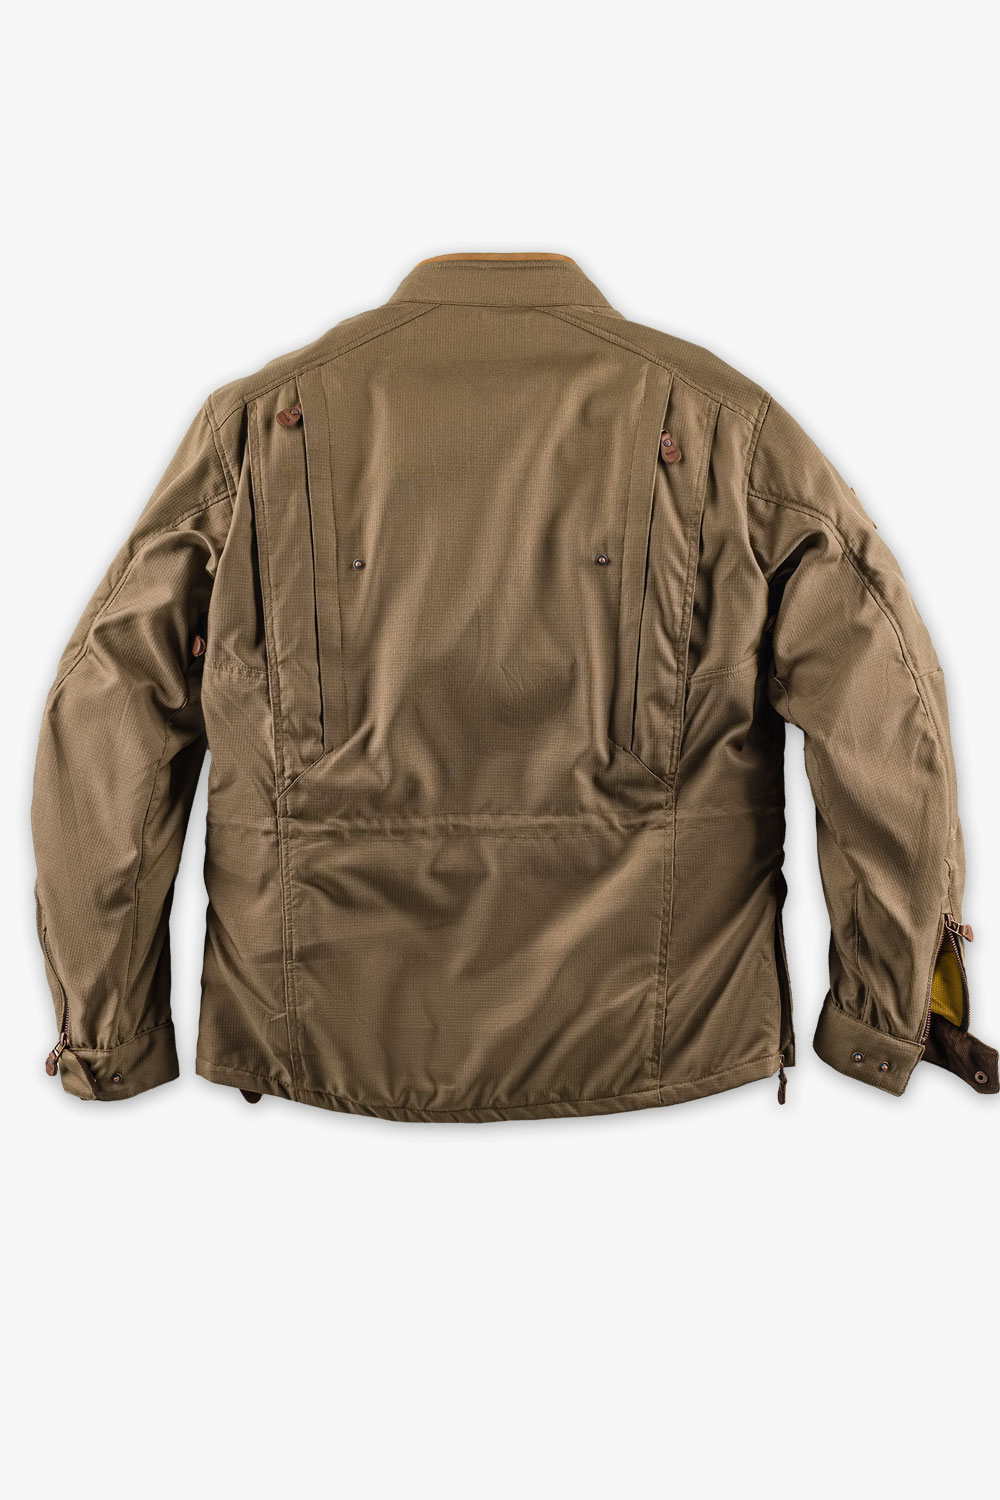 mens Dryzone suit brown jacket back